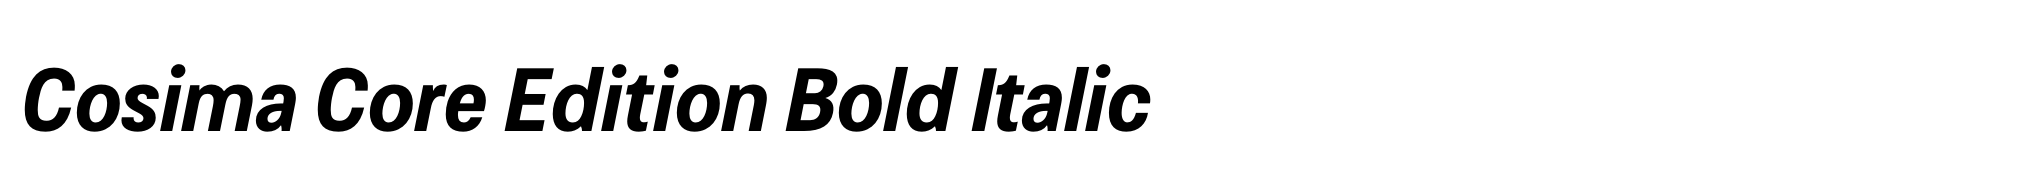 Cosima Core Edition Bold Italic image